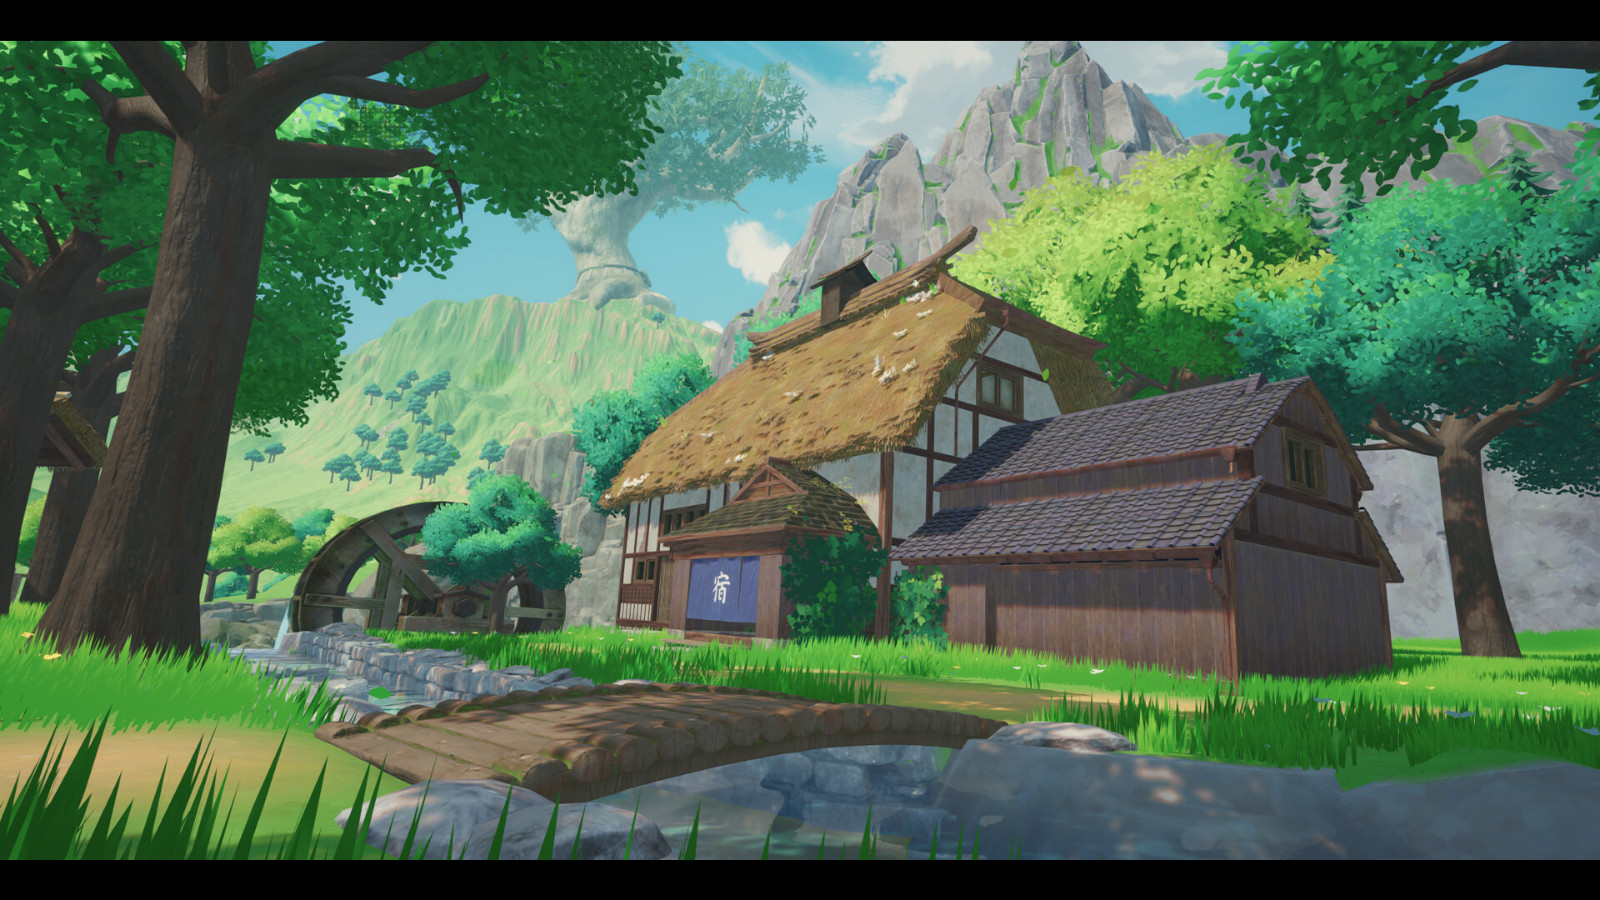 东方奇幻风格的农场模拟冒险游戏《青丘物语》Steam页面上线 发售日期待定 二次世界 第6张